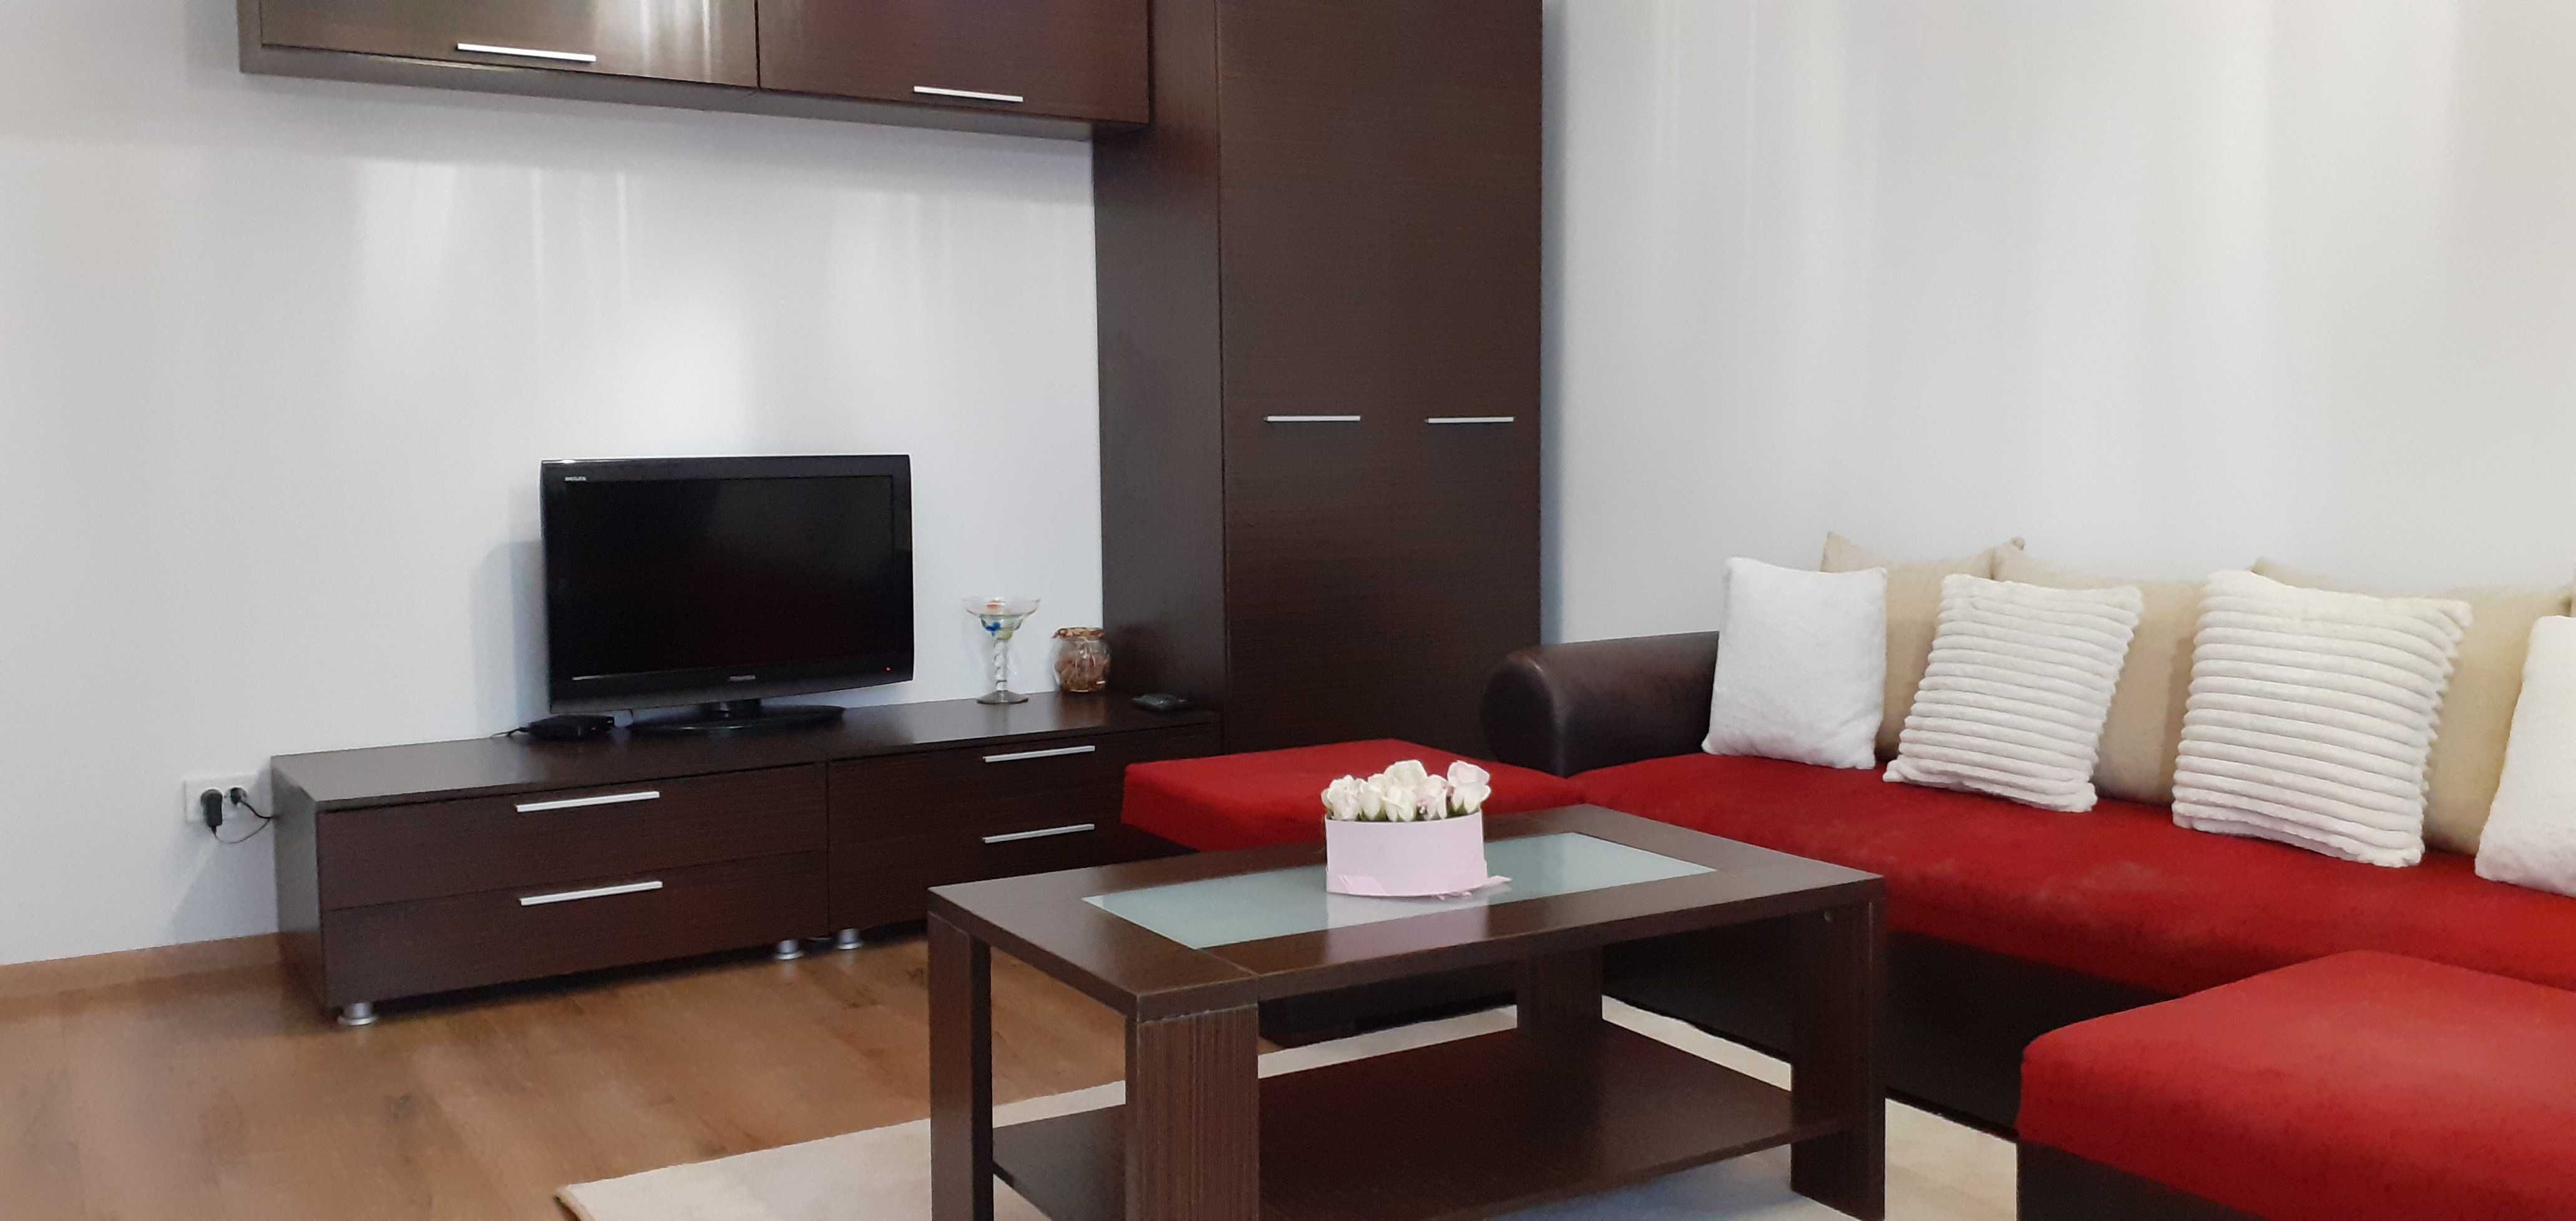 Inchiriez apartament modern 2 camere bloc nou Turda Noua + loc parcare